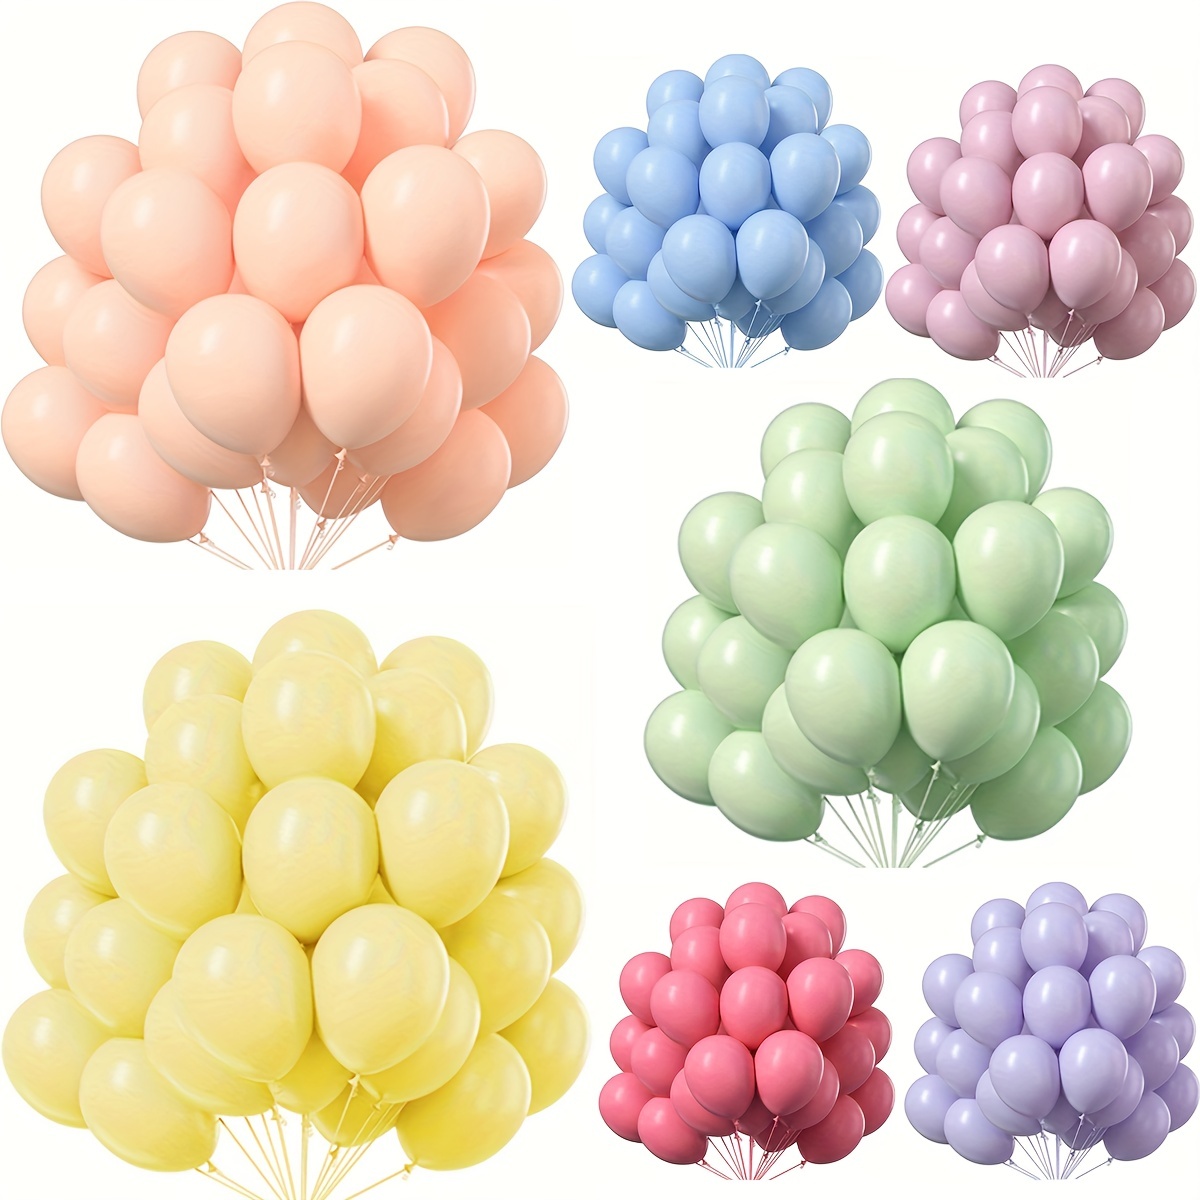 Mini globos de látex pastel de 5 pulgadas, 200 unidades, globos de látex de  colores pastel surtidos para bodas, cumpleaños, baby shower, suministros